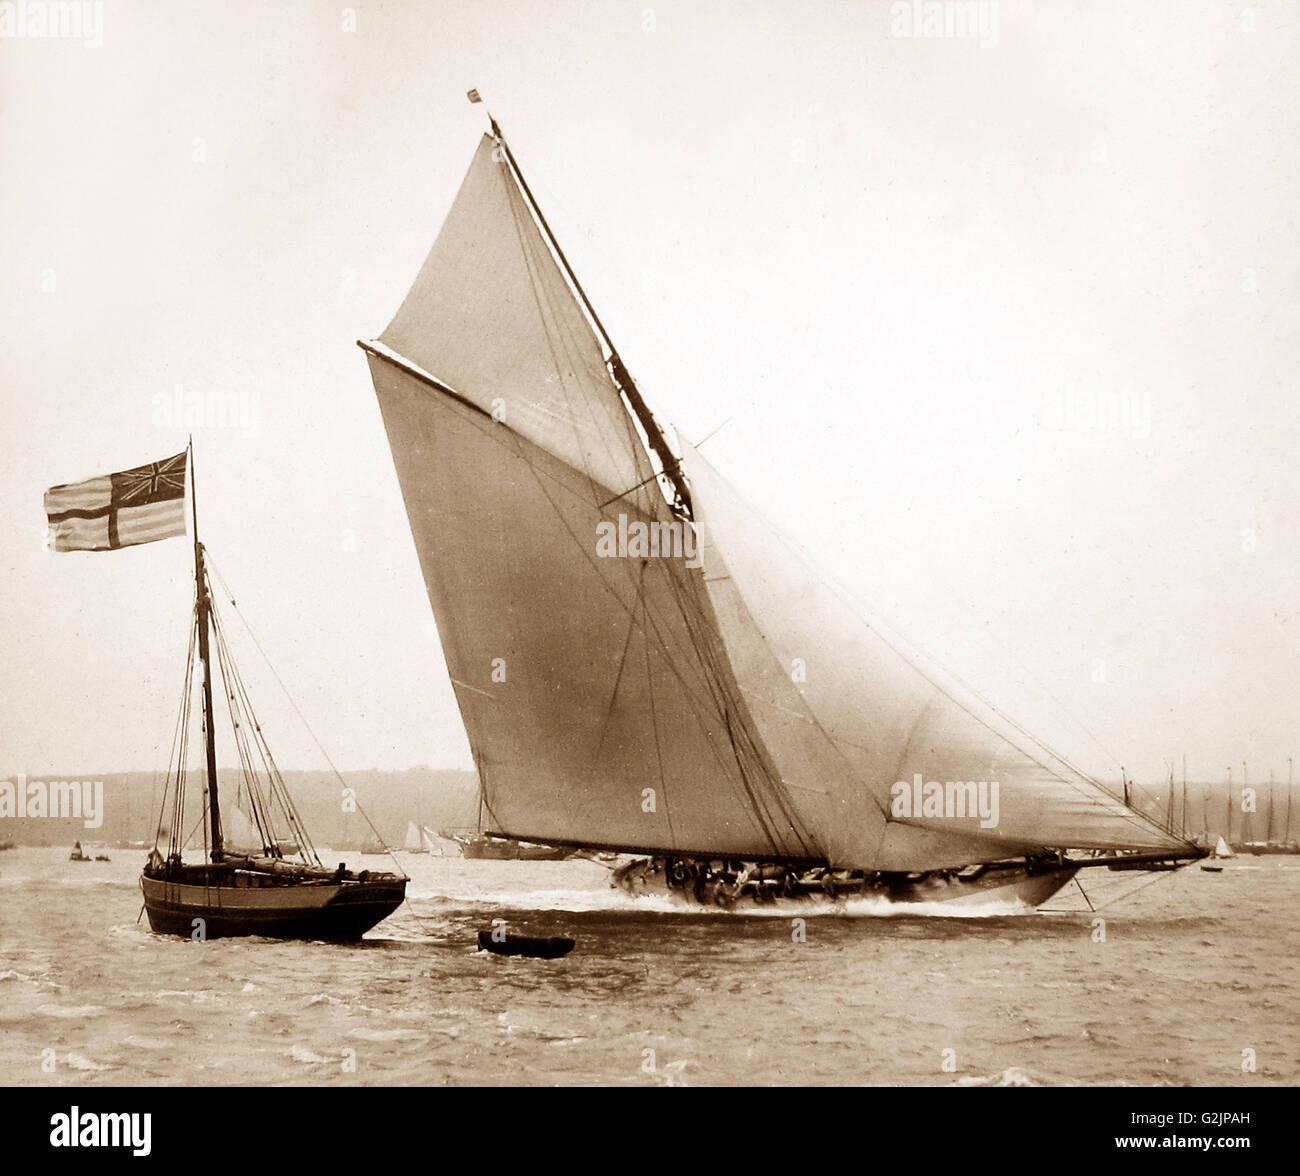 Racing yacht "vigili", vincitore della Coppa America nel 1893. Le foto potrebbero essere state prese a Cowes, Isle of Wight - periodo Vittoriano Foto Stock